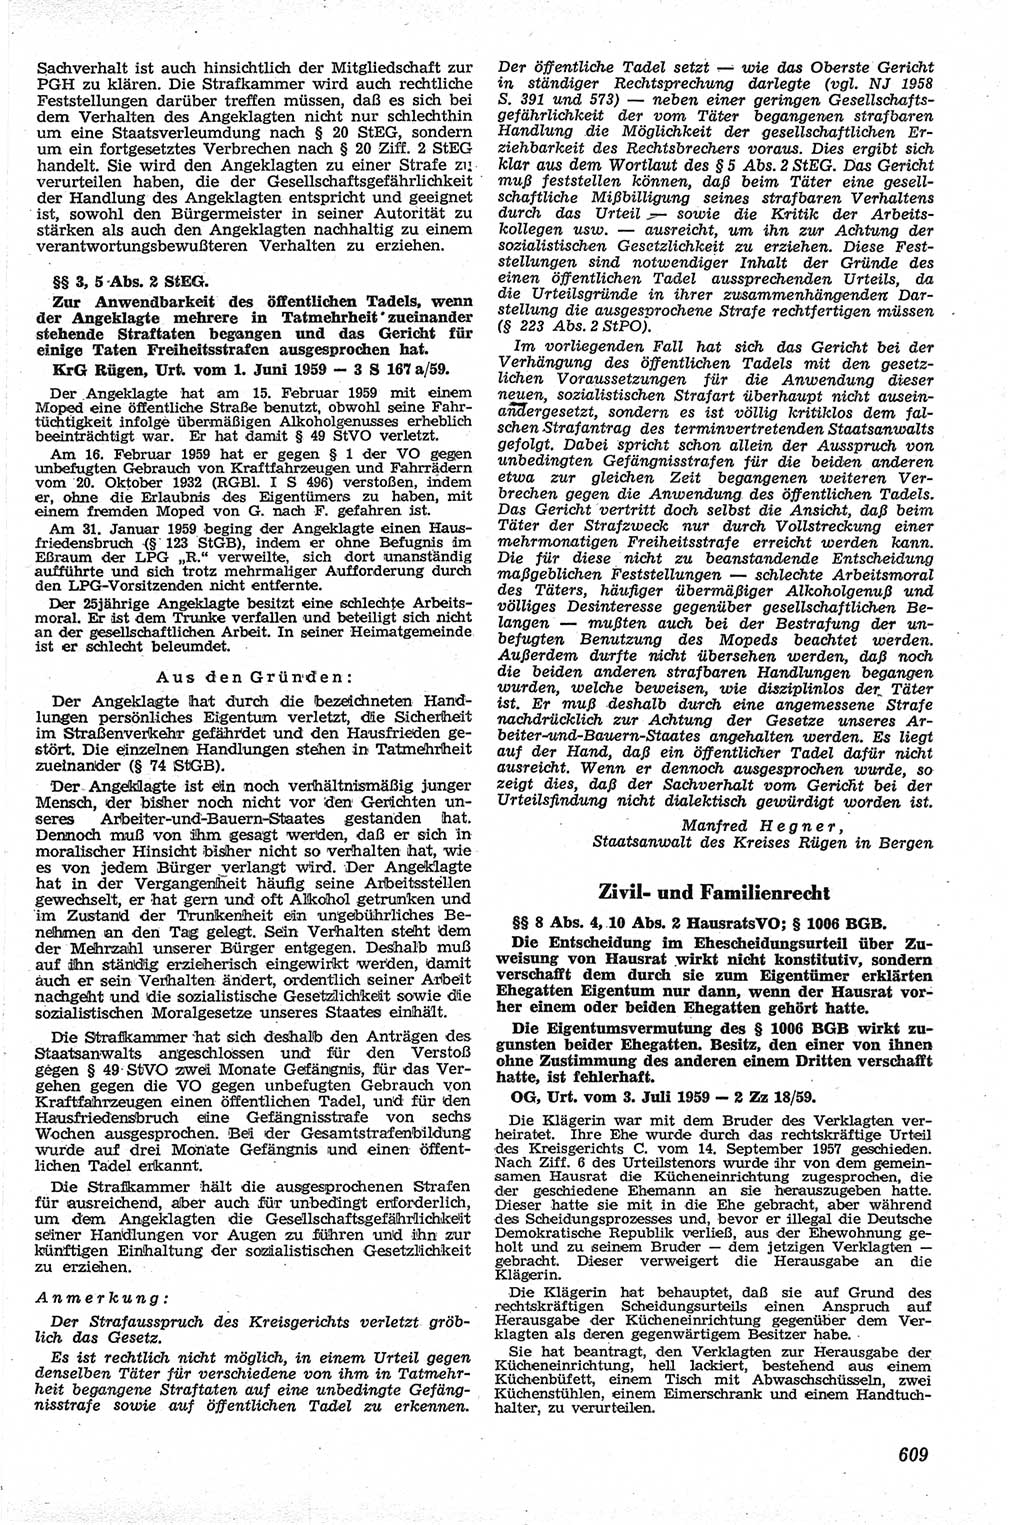 Neue Justiz (NJ), Zeitschrift für Recht und Rechtswissenschaft [Deutsche Demokratische Republik (DDR)], 13. Jahrgang 1959, Seite 609 (NJ DDR 1959, S. 609)